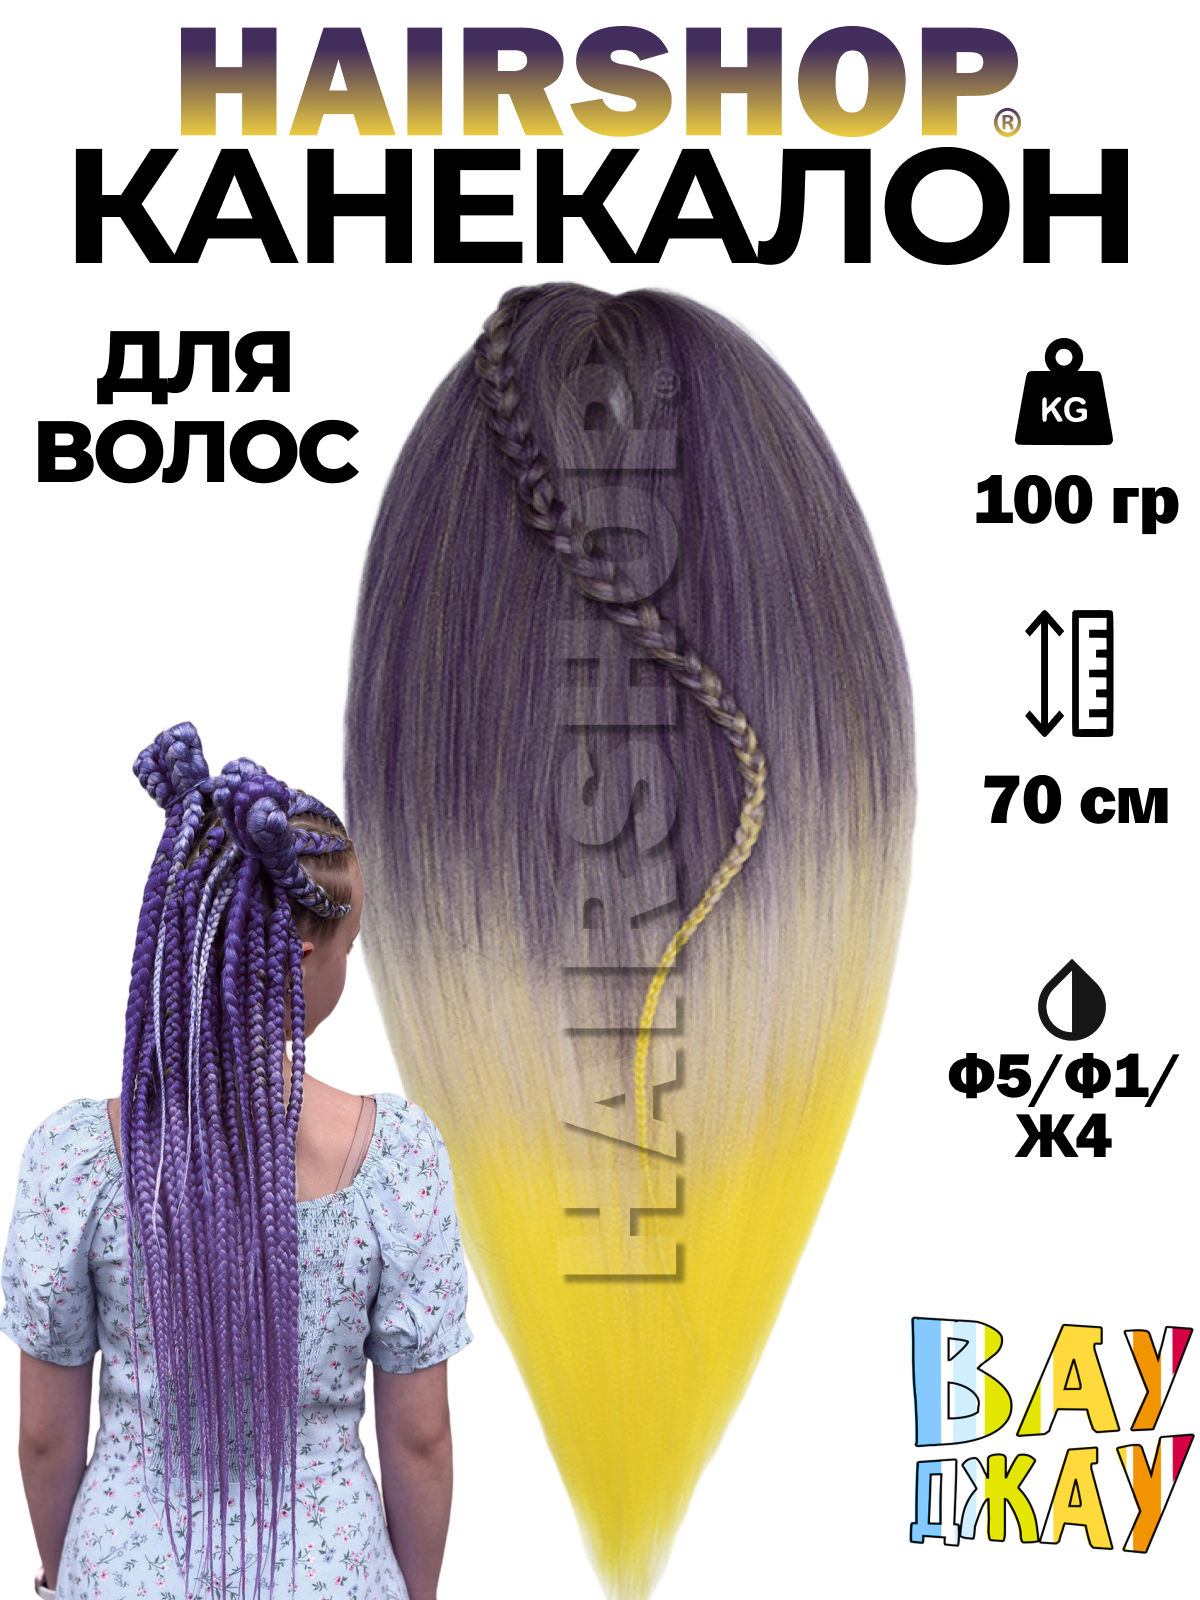 Канекалон HAIRSHOP Вау Джау Ф5-Ф1-Ж4 1,3м 100г Фиолетово-баклажановый, Фиолетовый, Желтый манекен для причесок курс по обучению плетению кос 10 уроков линком мп 1